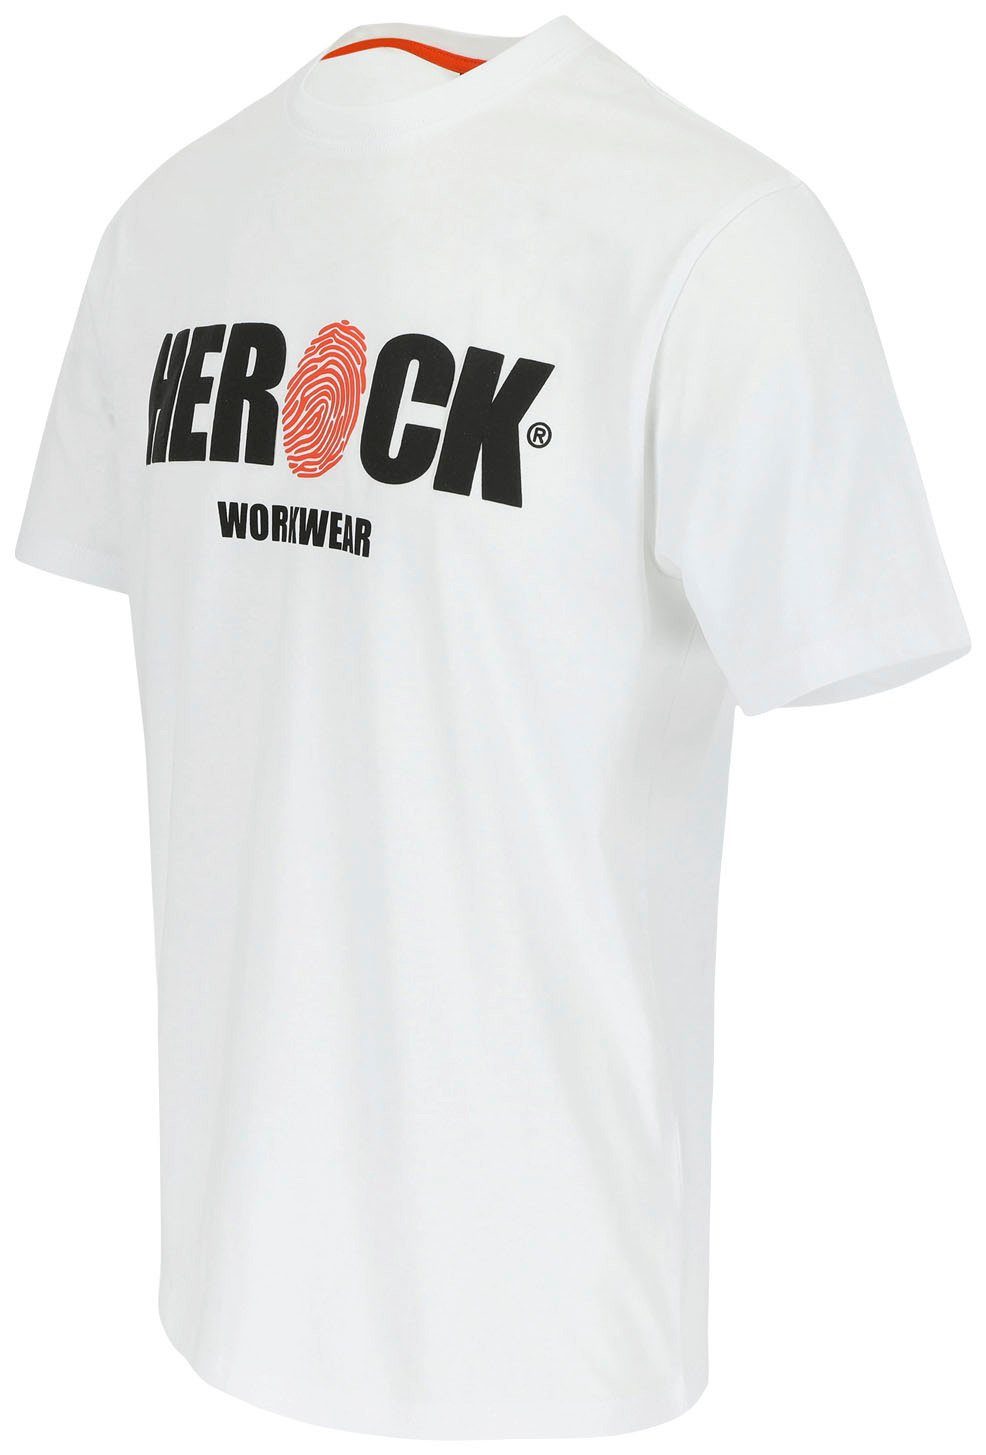 Rundhals, Herock Baumwolle, angenehmes Tragegefühl ENI mit weiß Herock®-Aufdruck, T-Shirt